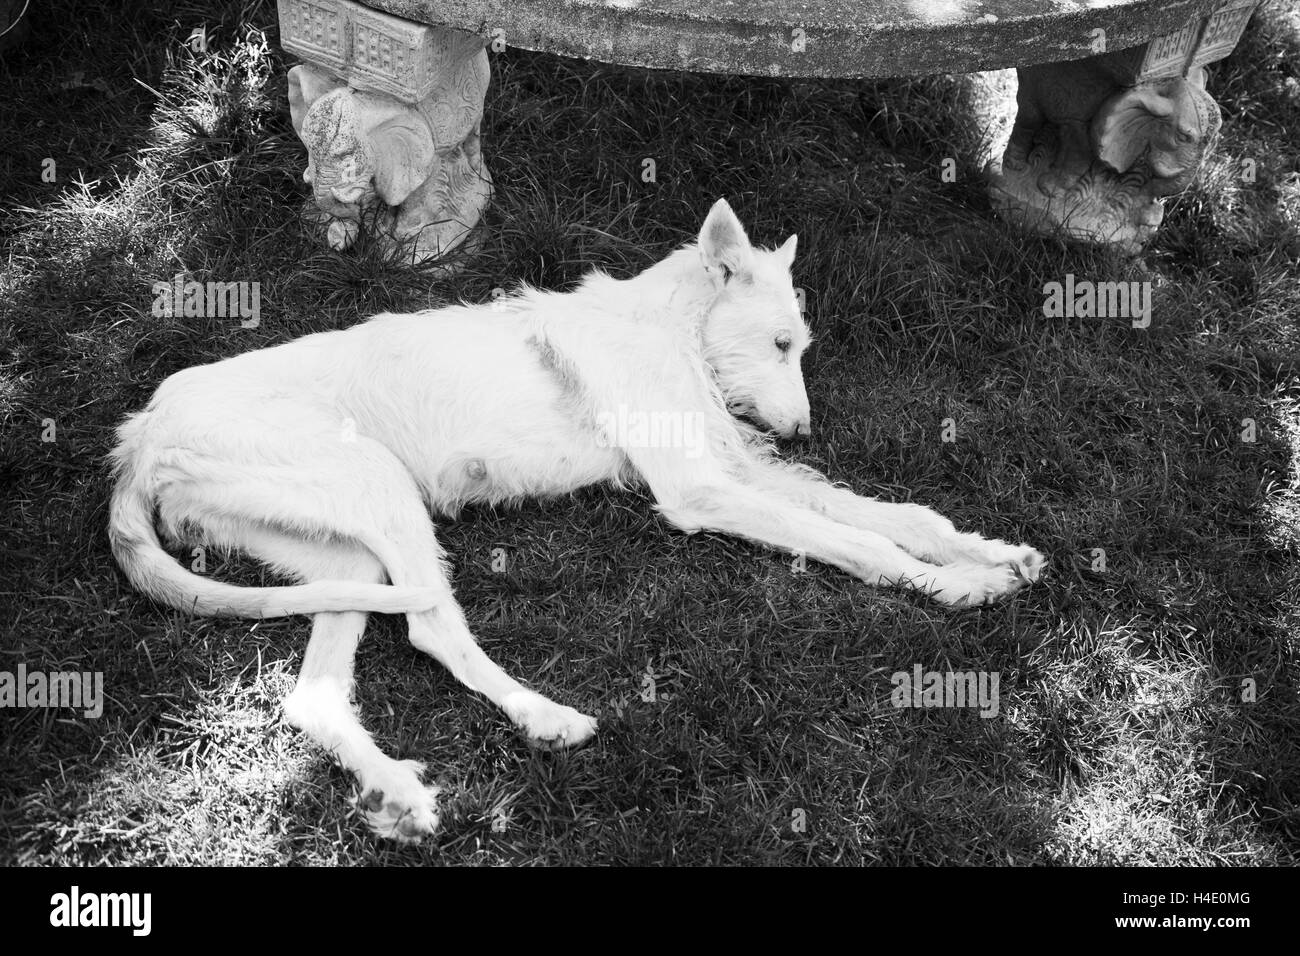 Sick dog lying abandoned and abused Stock Photo